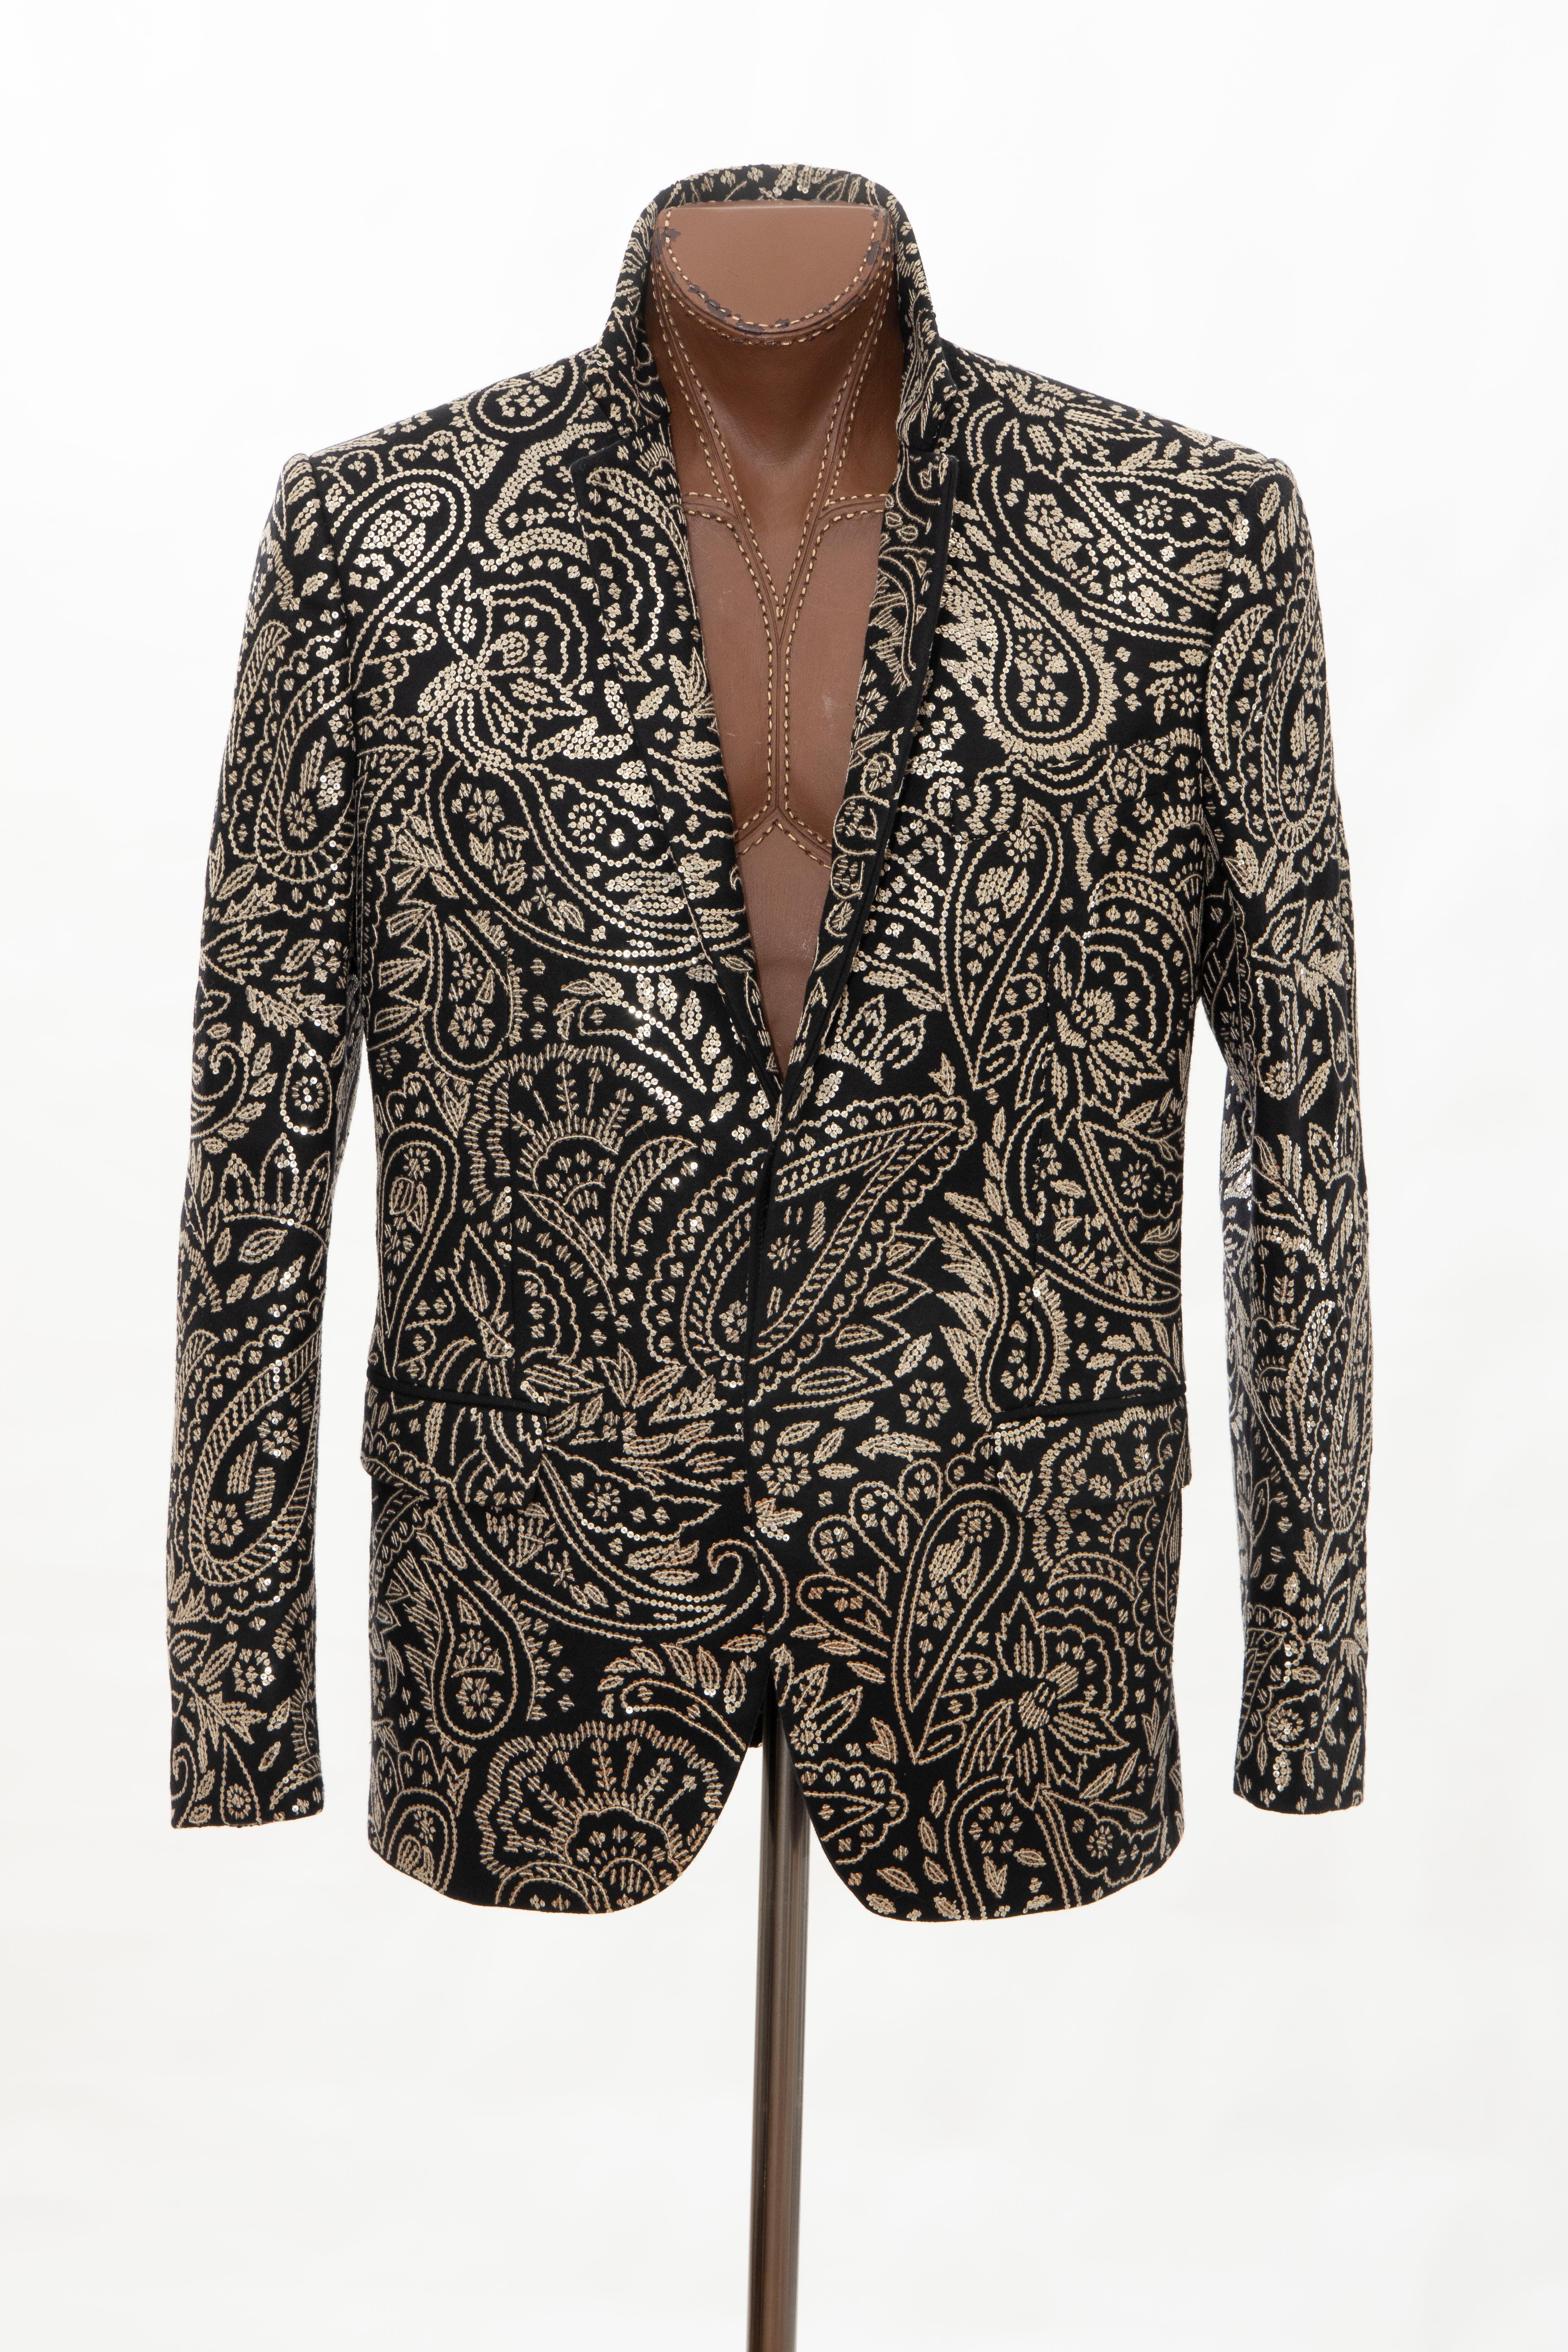 Alexander McQueen Men's Runway Black Wool Embroidered Sequin Blazer, Fall 2016 6